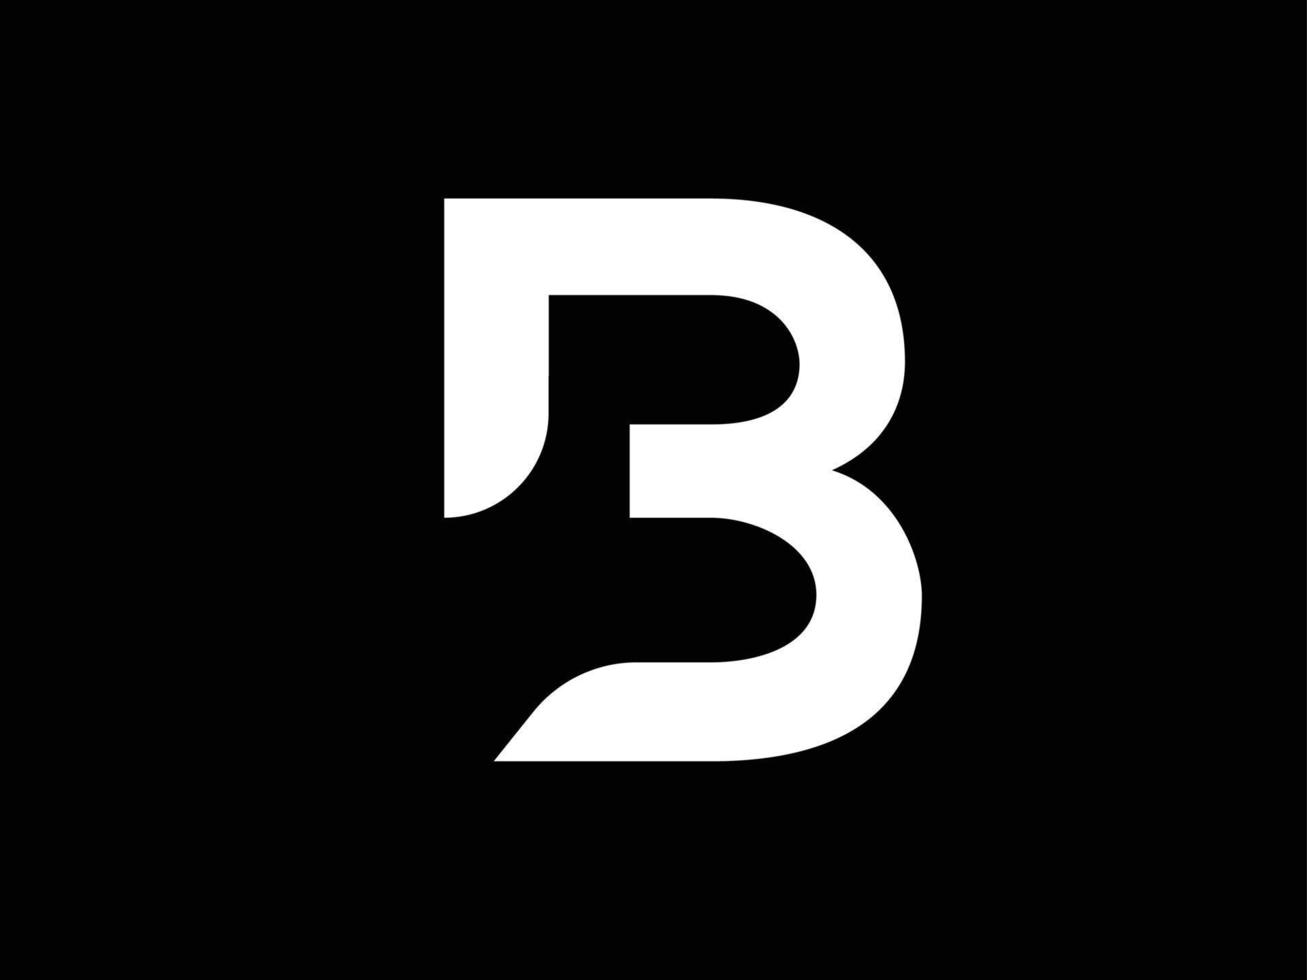 noir et blanc B. vecteur de logo b moderne. logo majuscule b